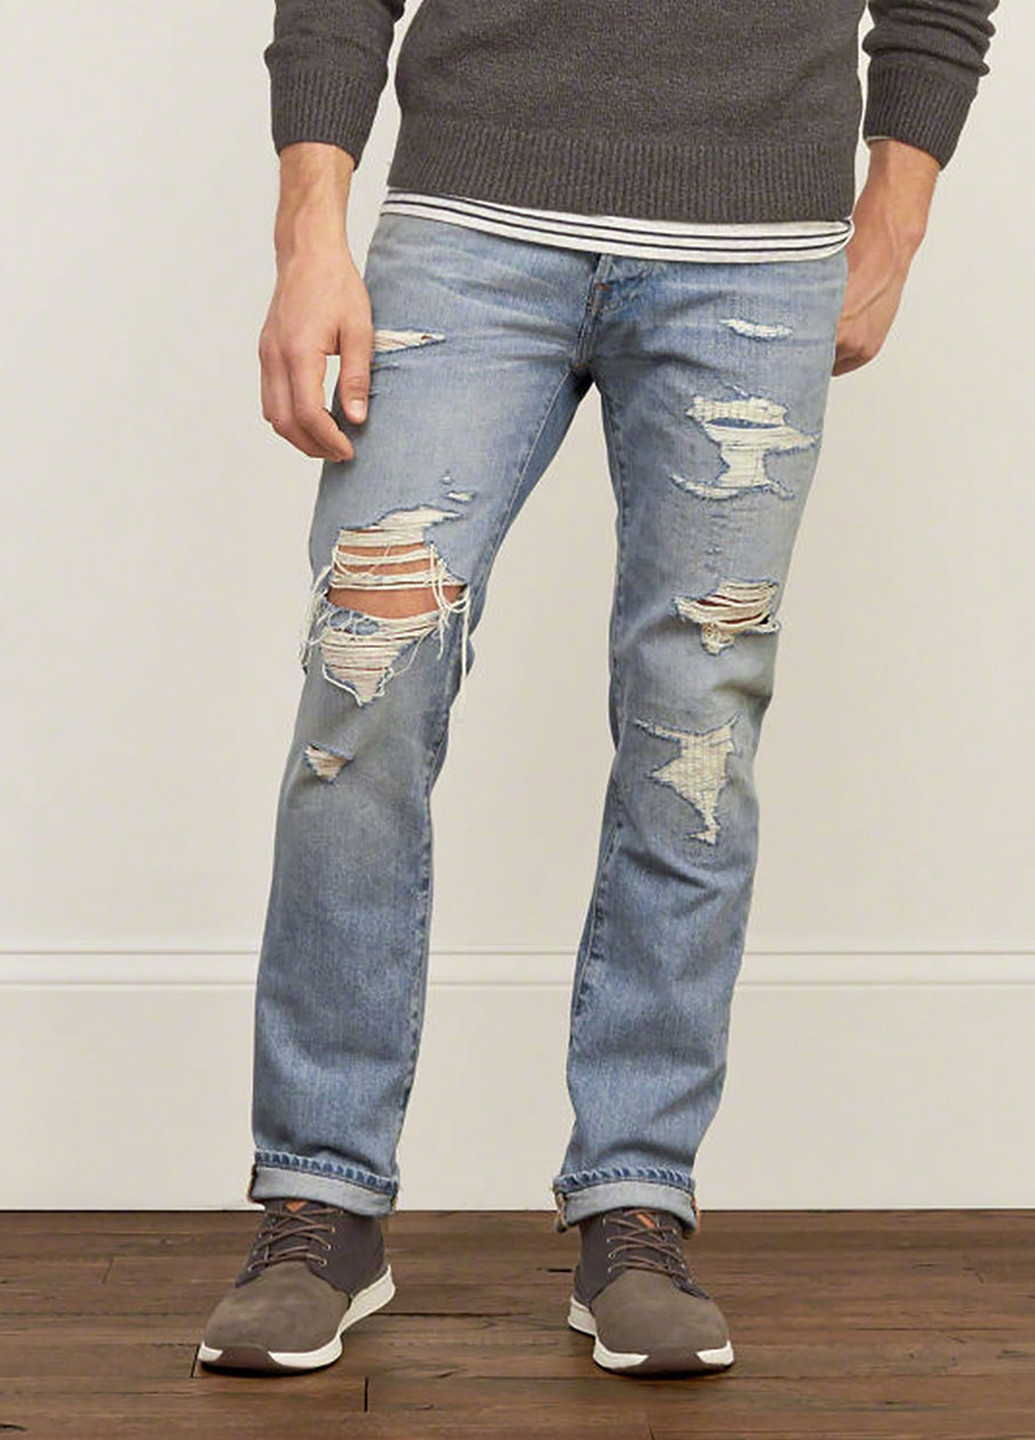 Голубые демисезонные зауженные джинсы Abercrombie & Fitch